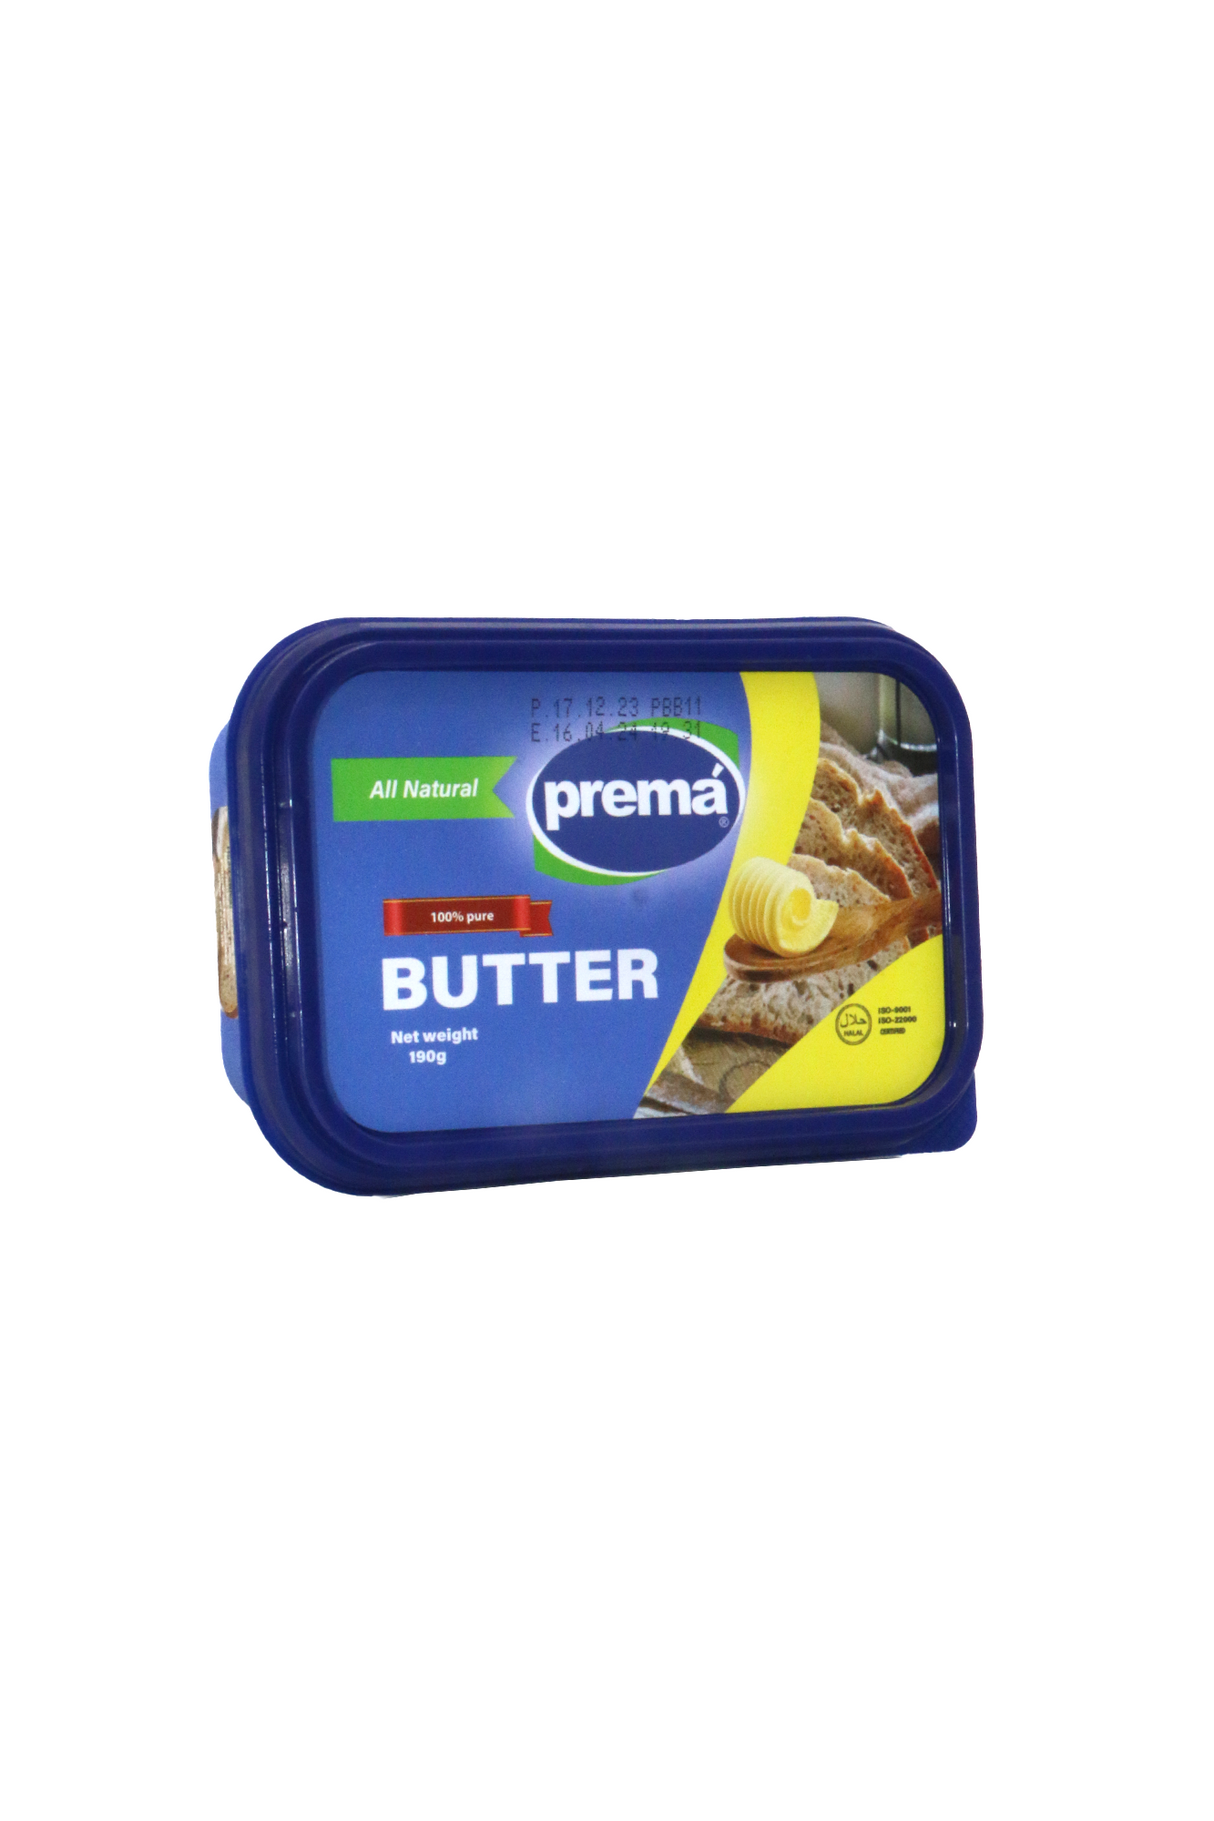 prema butter plain 190g